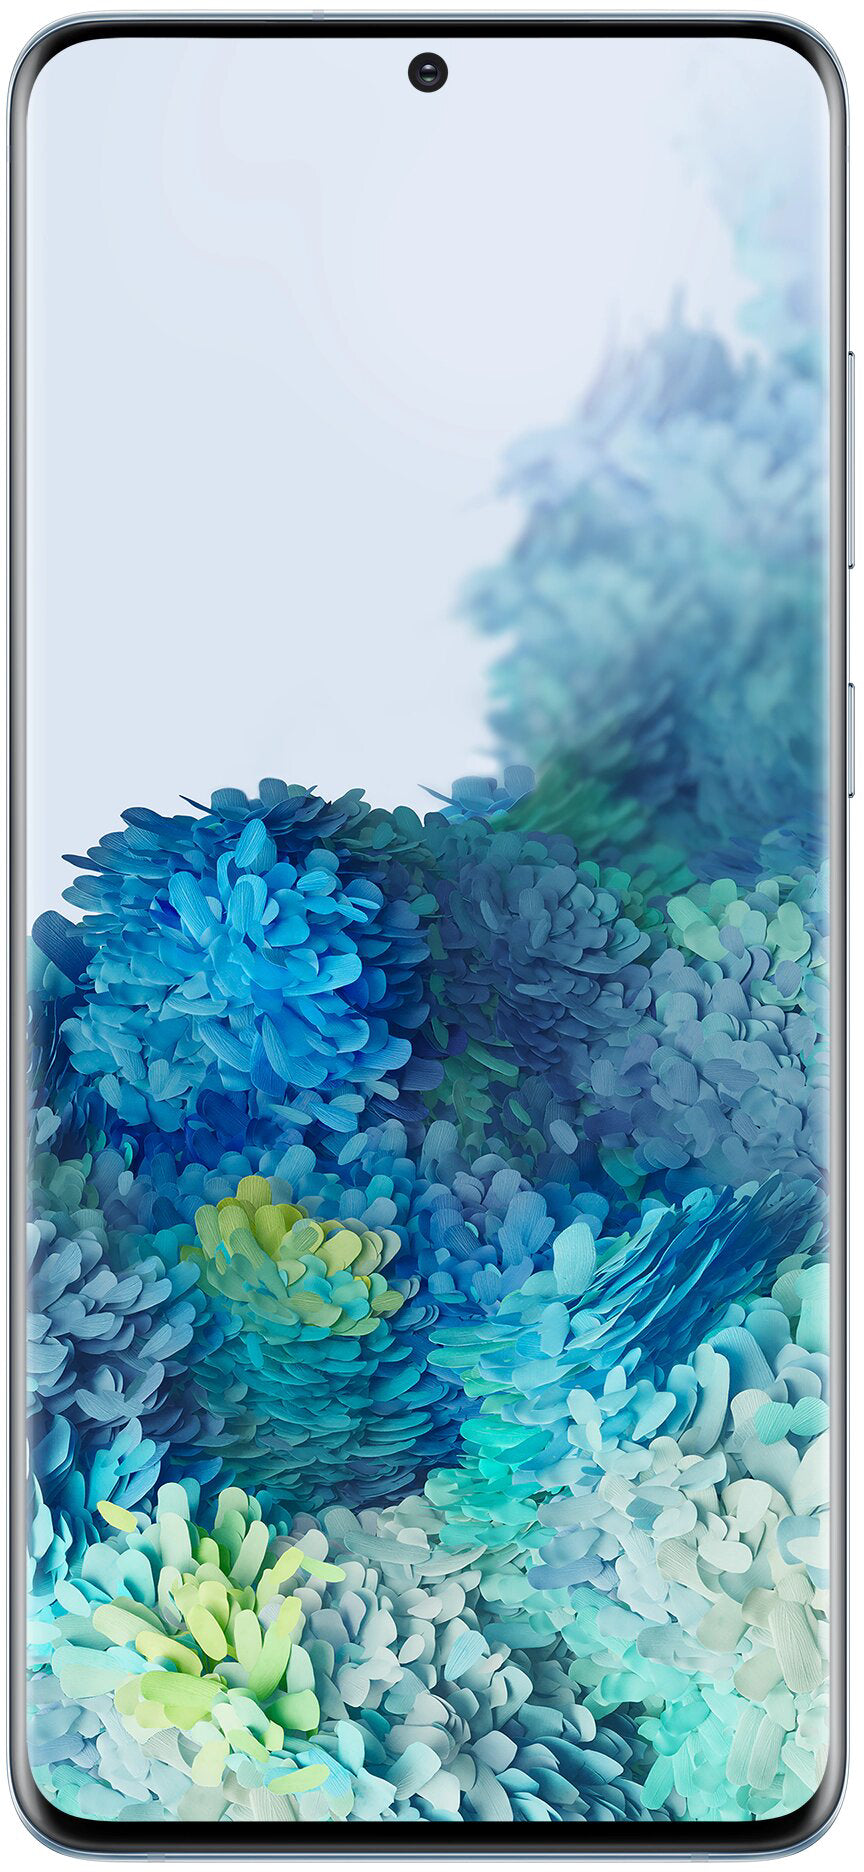 Samsung Galaxy S20+ Single SIM + eSIM 8GB + 128GB - Cloud Blue